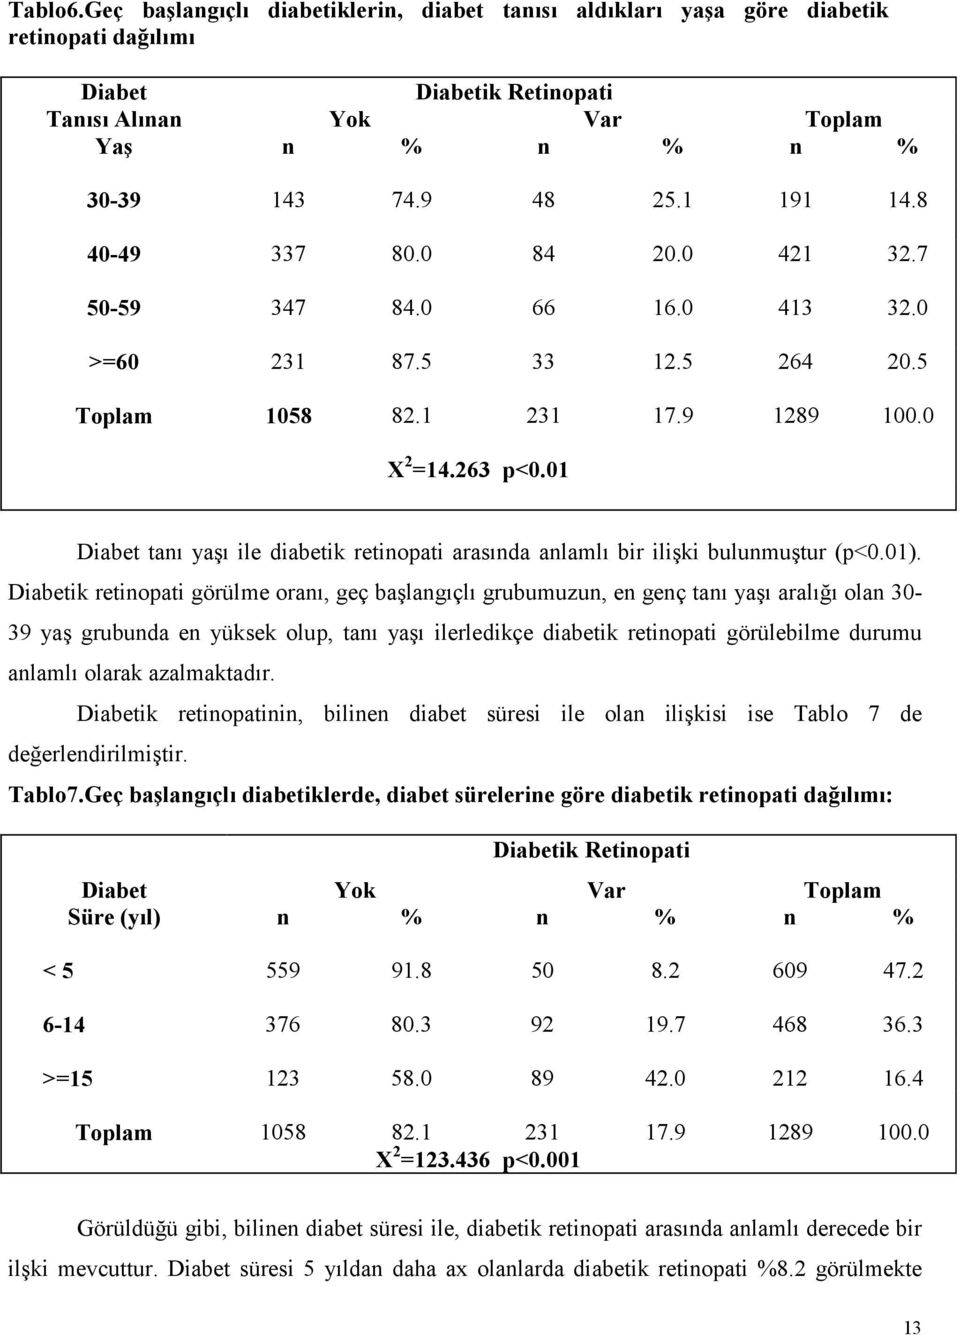 01 Diabet tanı yaşı ile diabetik retinopati arasında anlamlı bir ilişki bulunmuştur (p<0.01).